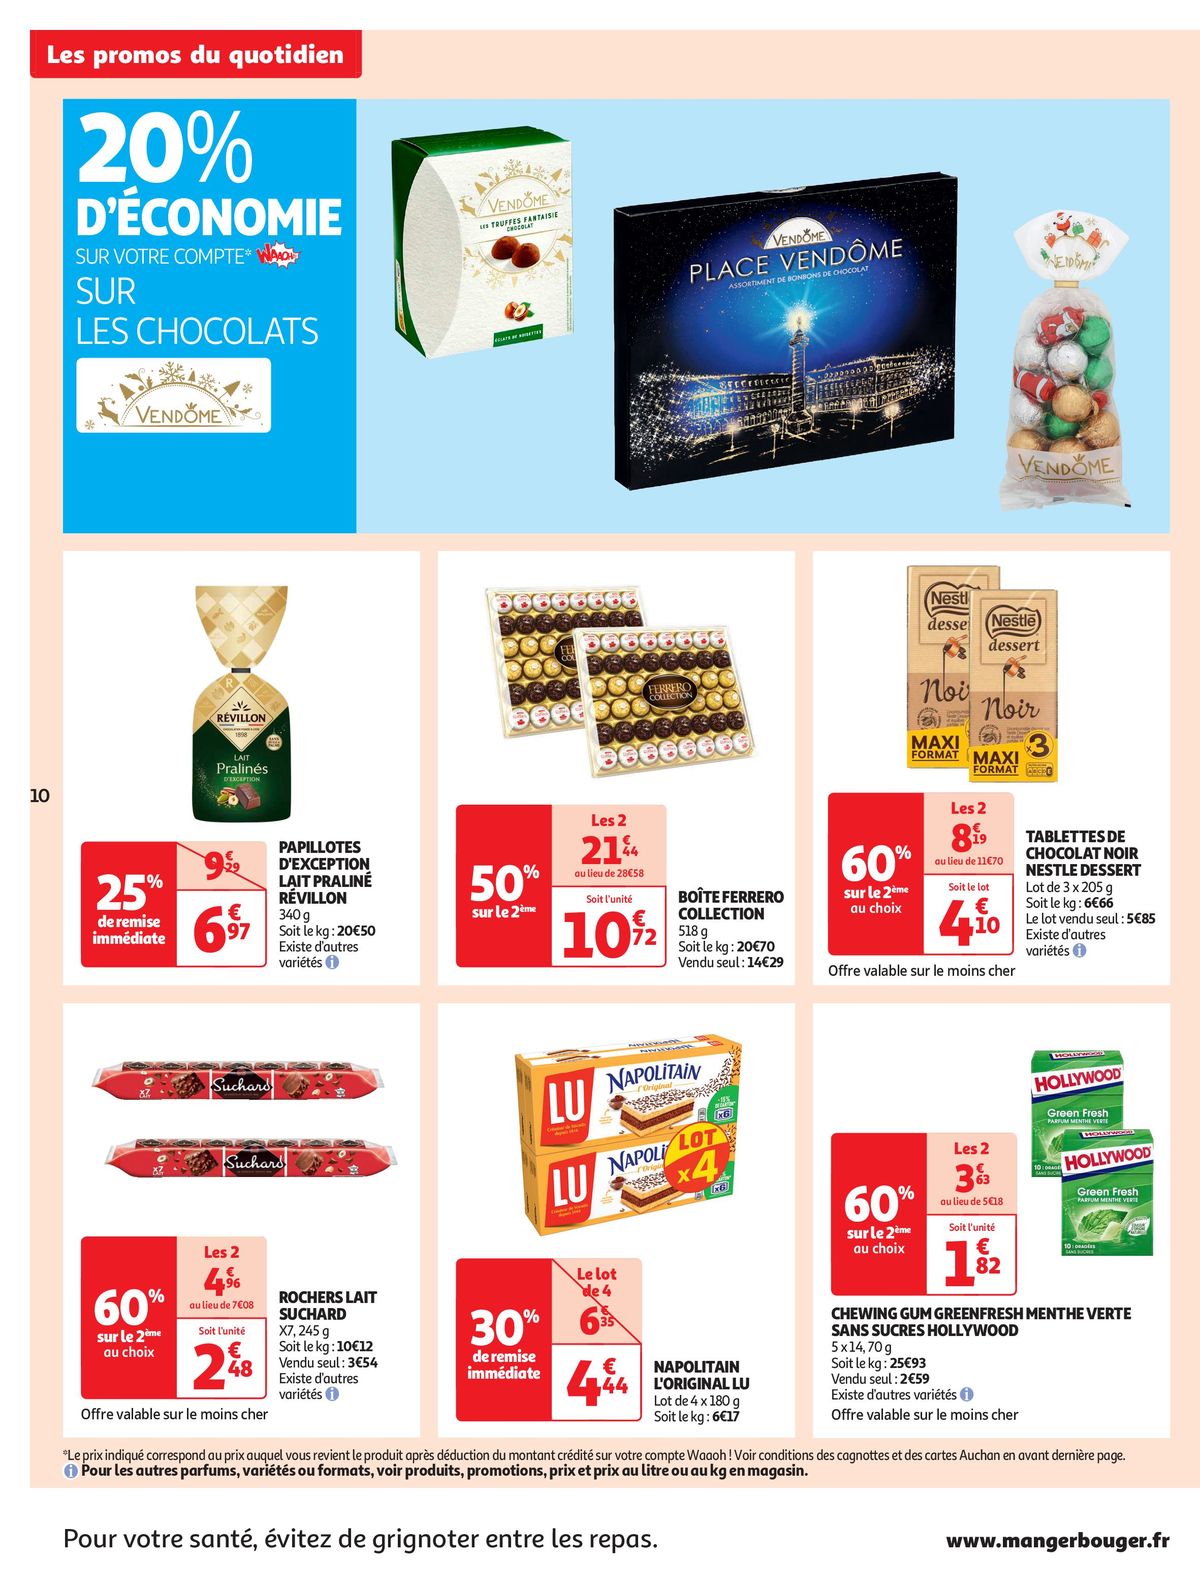 Catalogue Tout pour le réveillon dans votre supermarché, page 00010